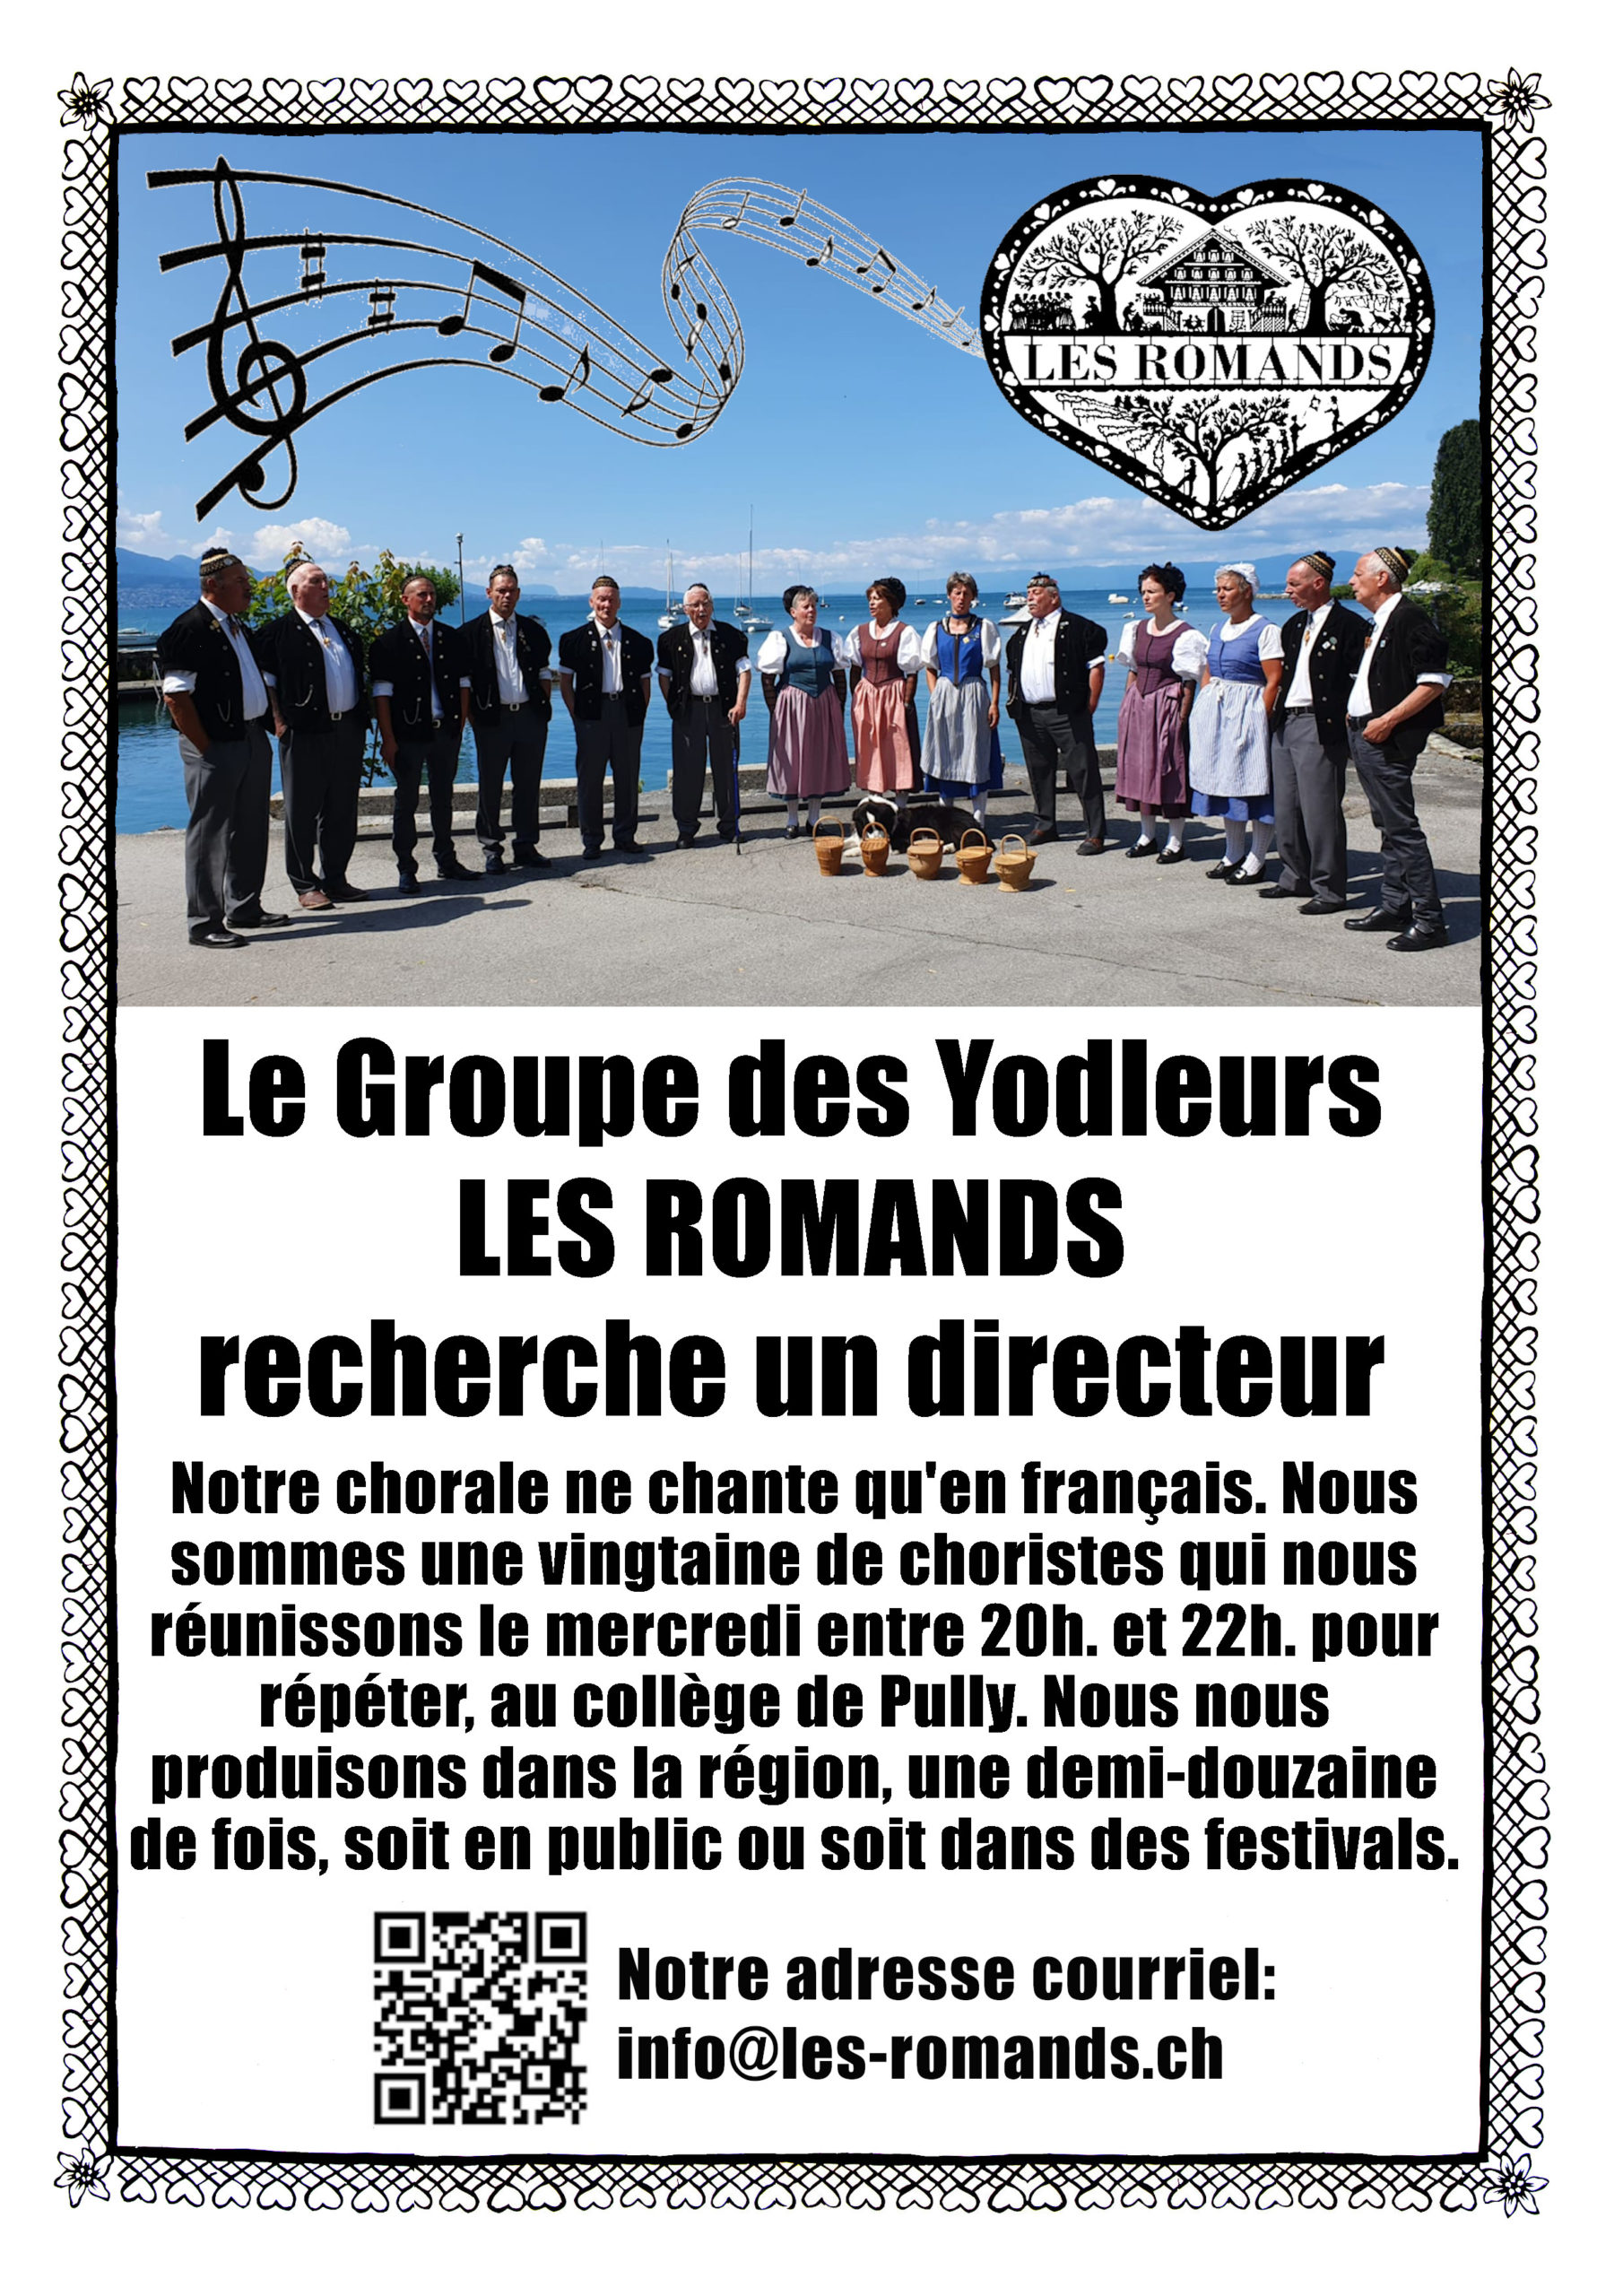 Groupe de yodleurs “Les Romands” : Recherche de directeur